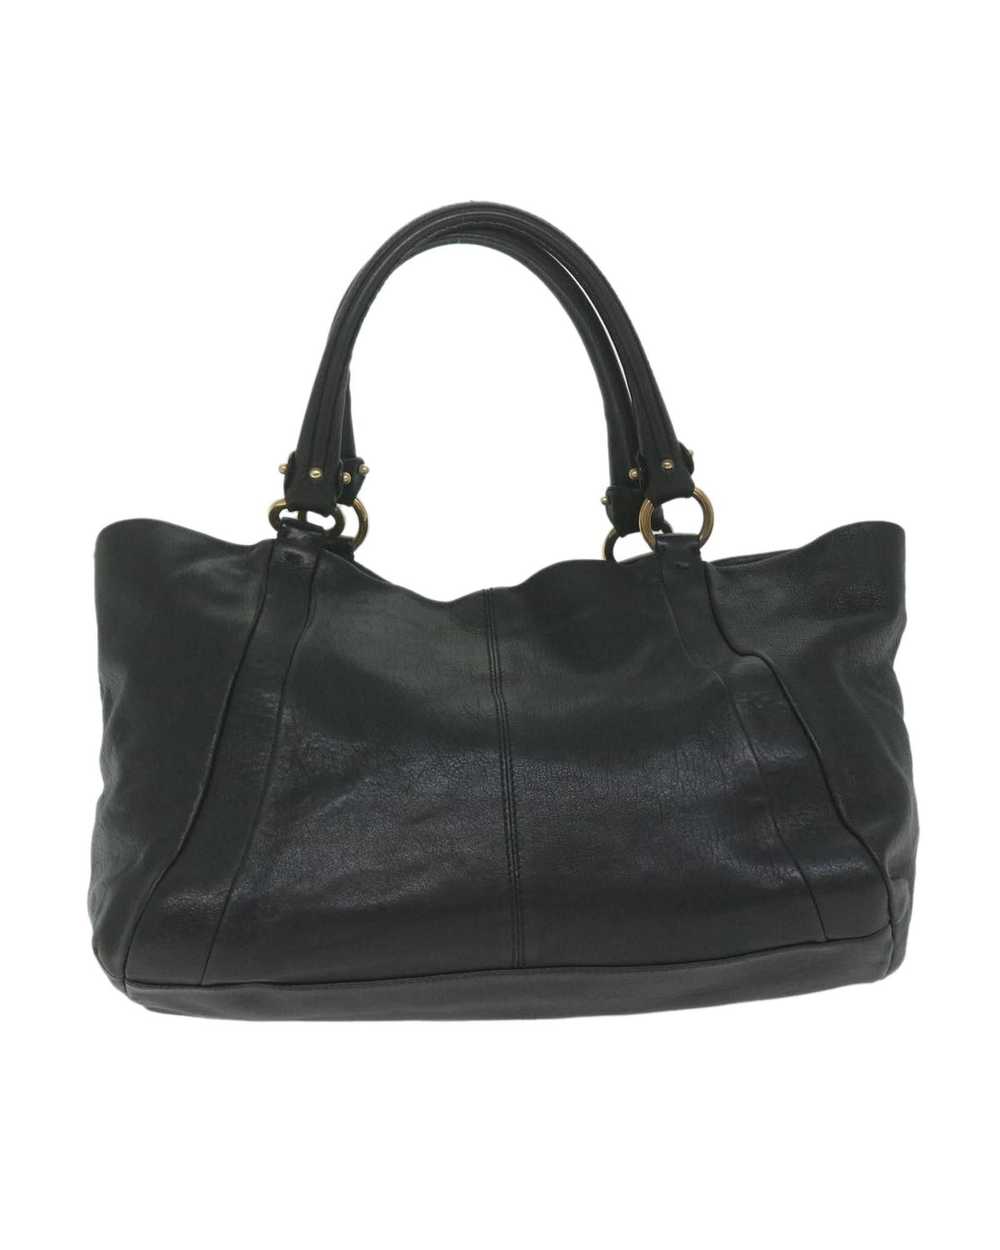 Salvatore Ferragamo Black Leather Tote Bag by Ita… - image 3